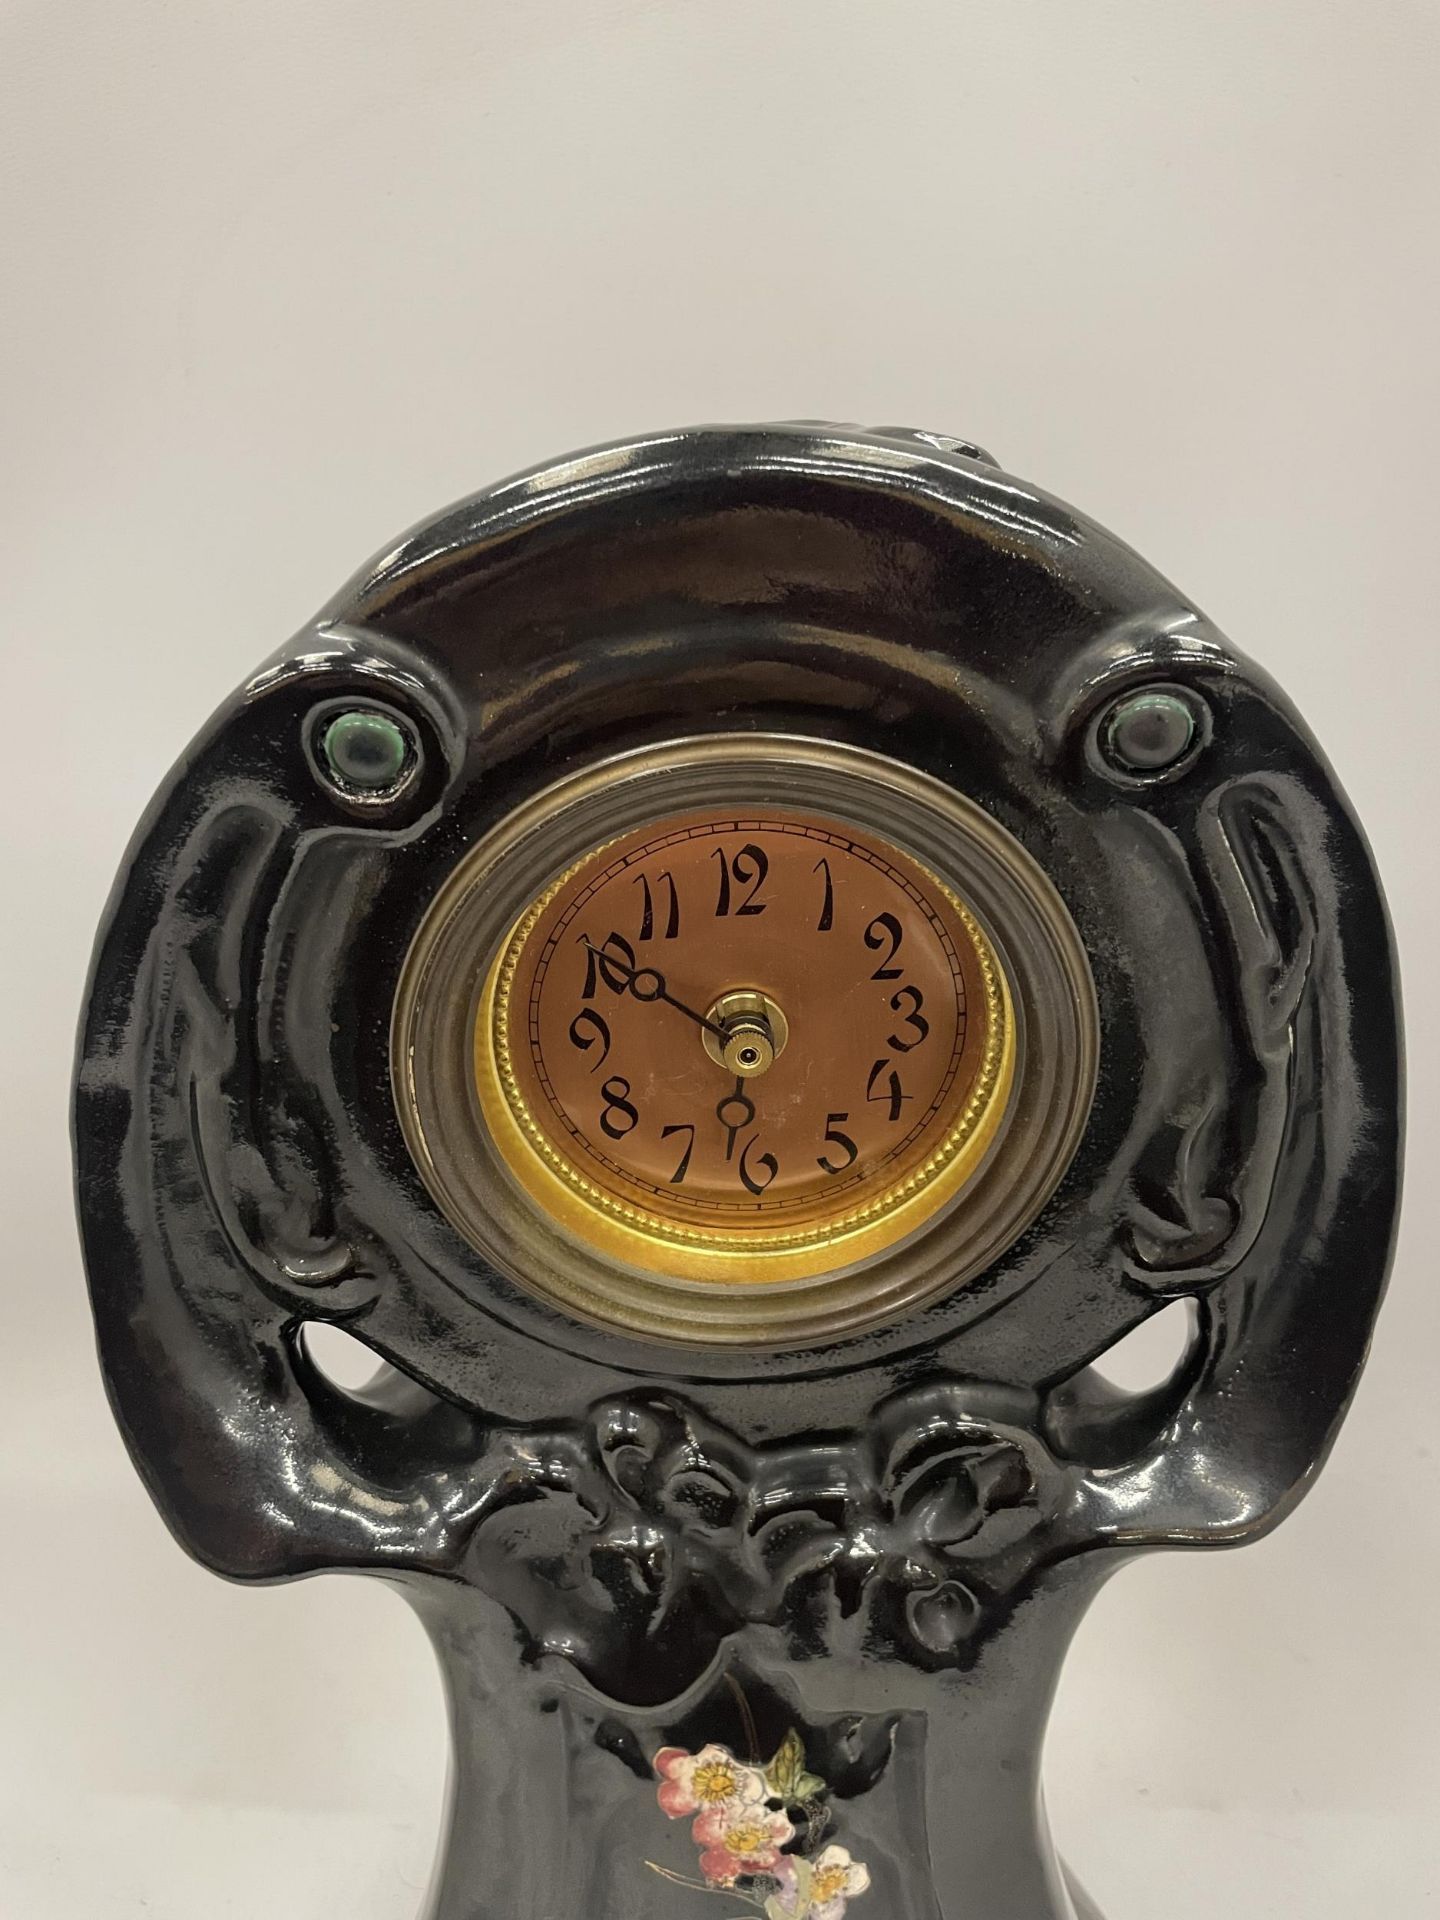 A BRETBY ART NOUVEAU FLORAL DESIGN MANTLE CLOCK - Image 2 of 4